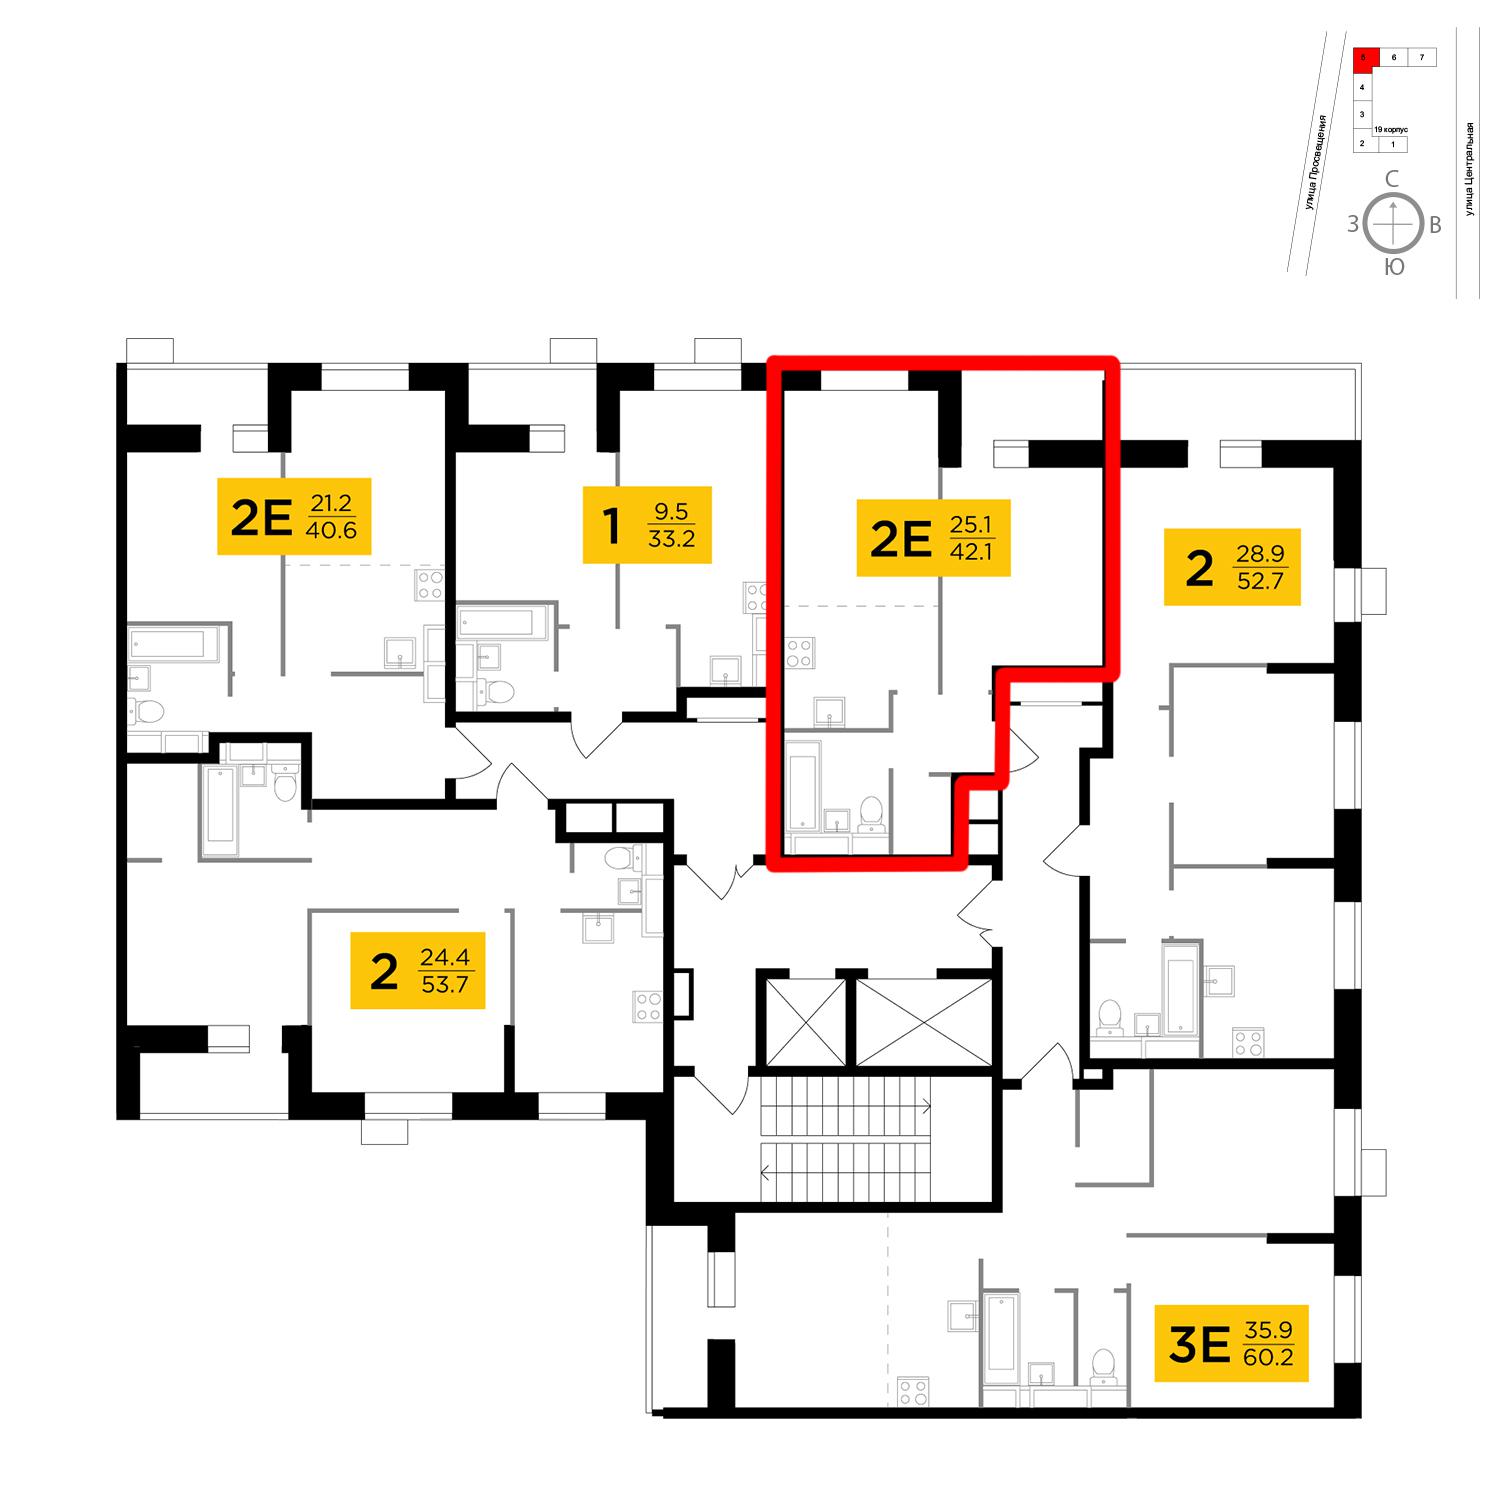 Продаётся 2-комнатная квартира в новостройке 42.1 кв.м. этаж 5/15 за 7 852 655 руб 